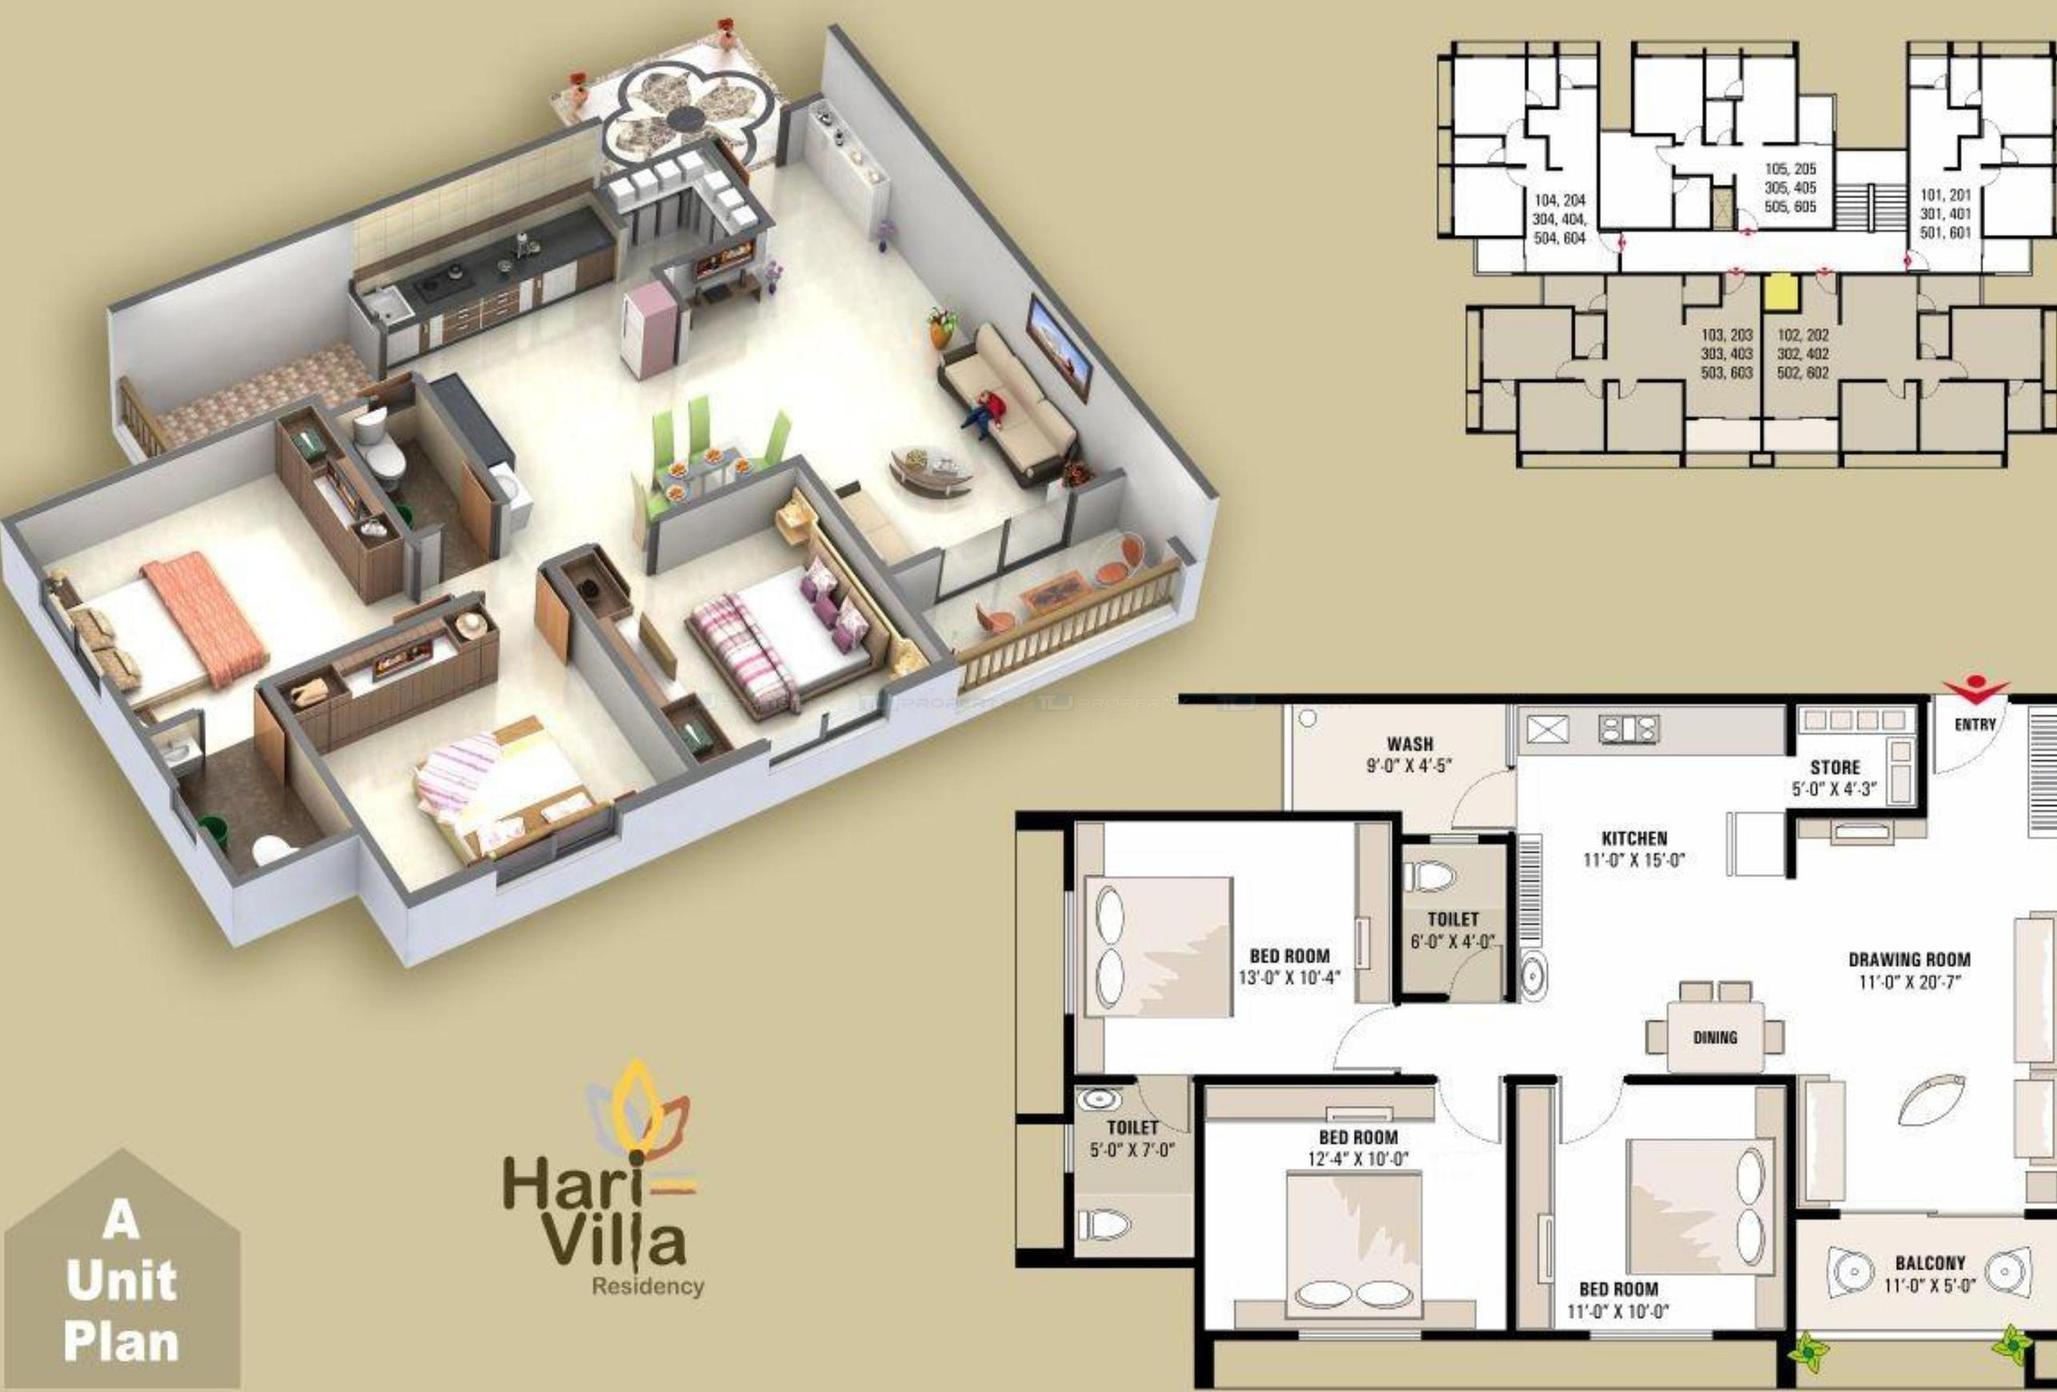 Hari Villa Residency